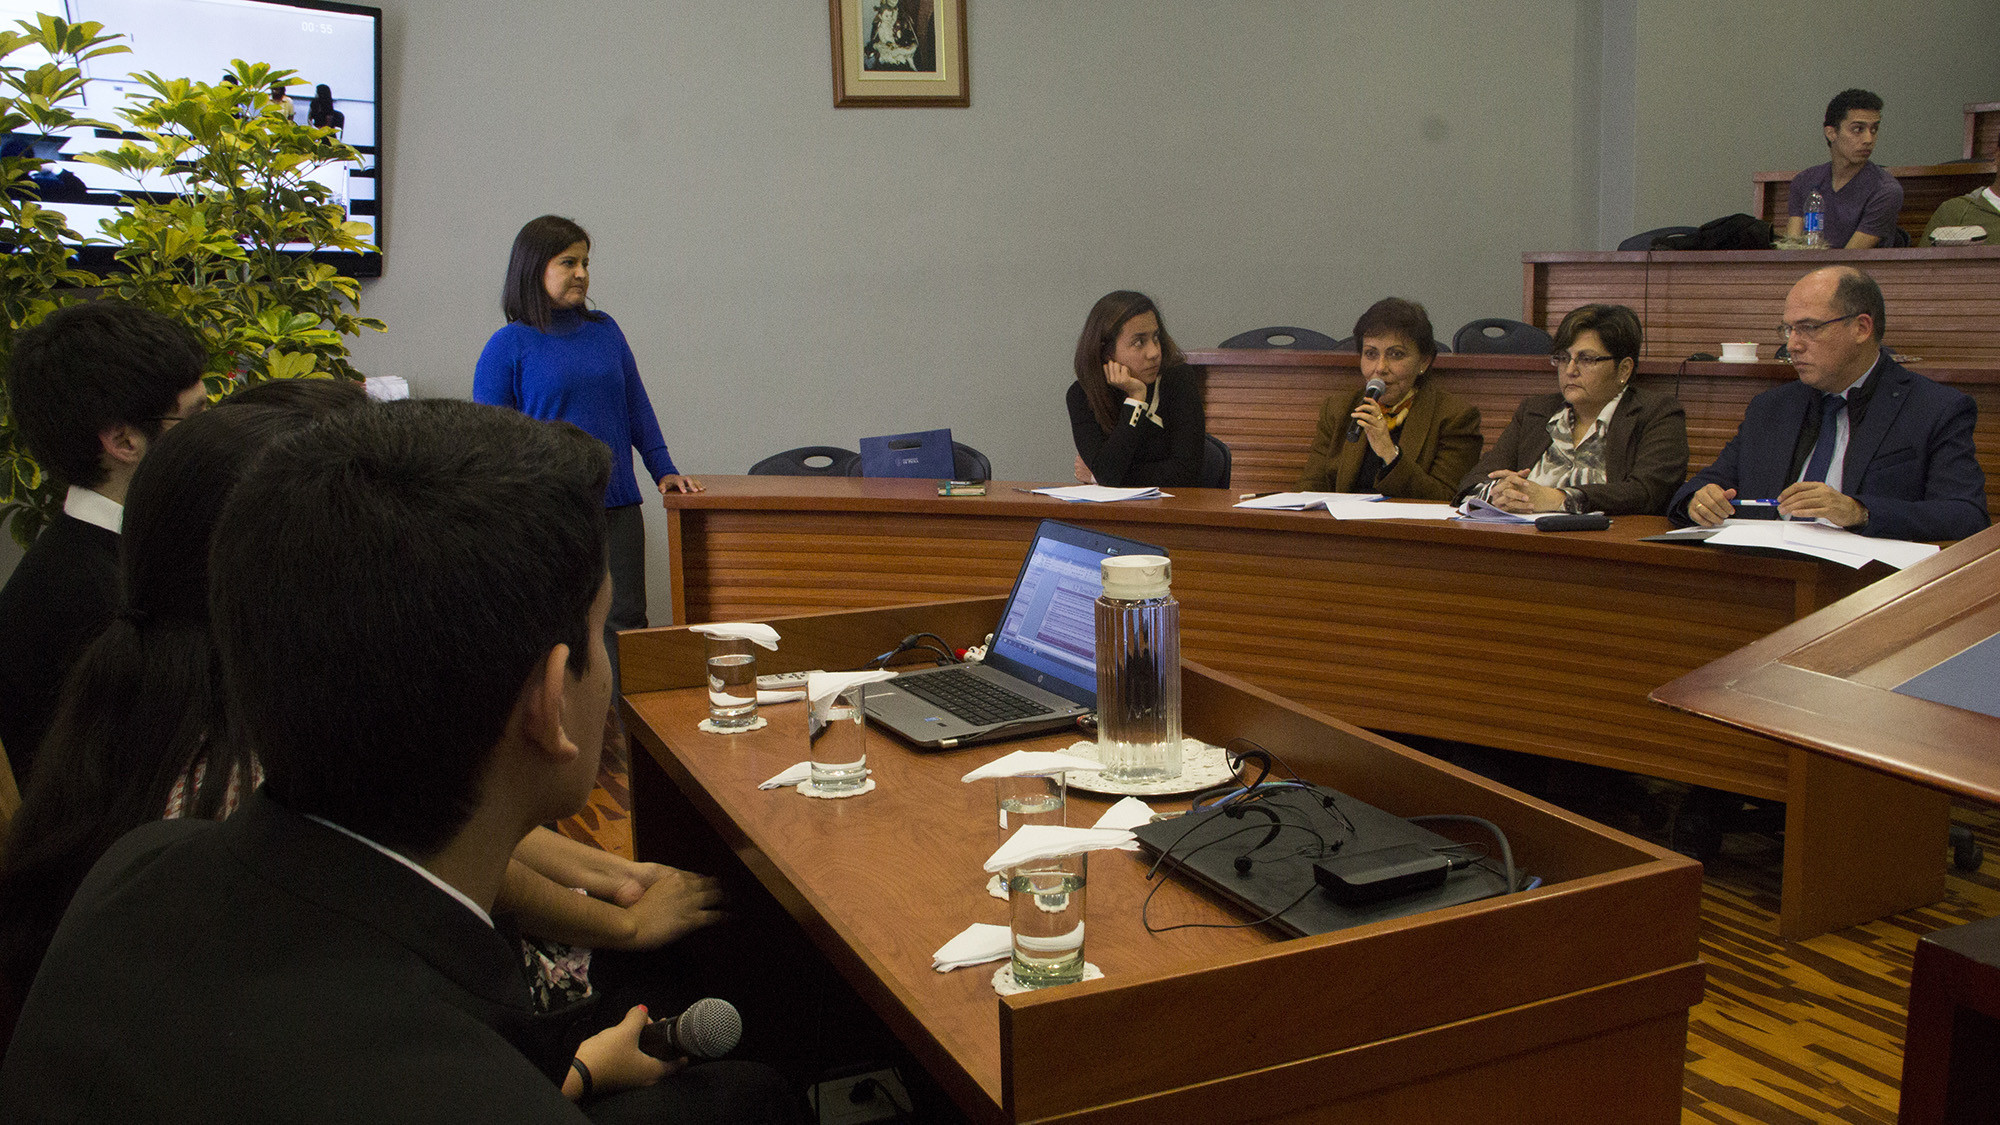 Los alumnos participantes escuchan atentamente las preguntas del jurado antes de pasar a ser evaluados.